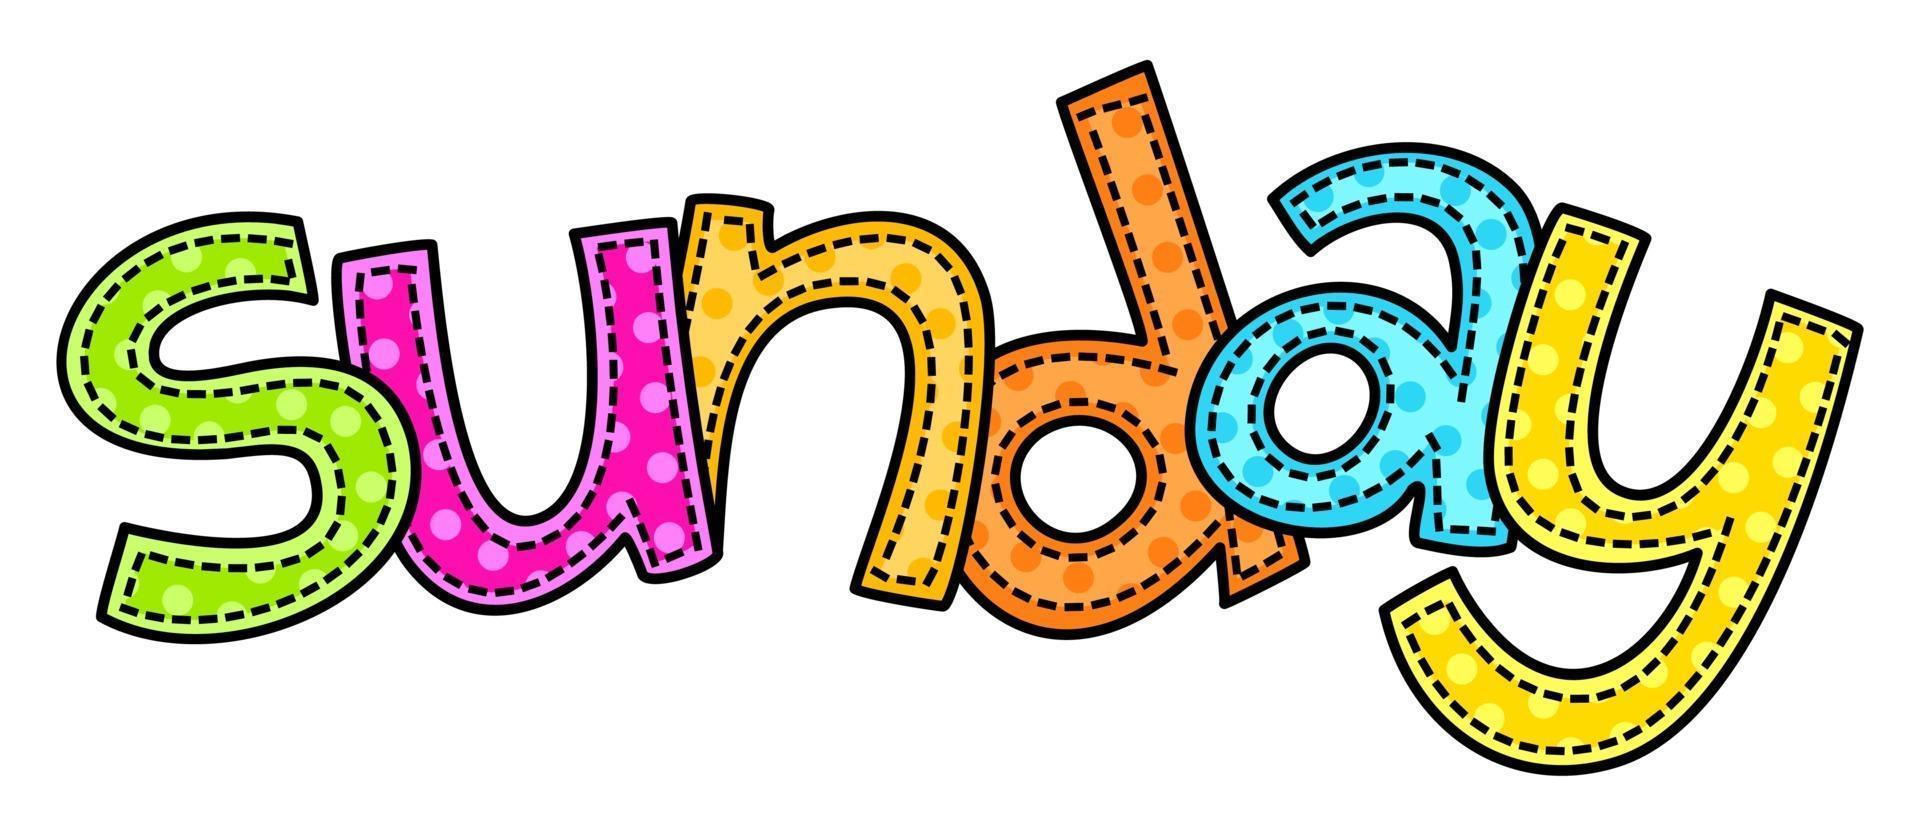 Sonntag Wochenende Doodle Stitch Text Schriftzug vektor